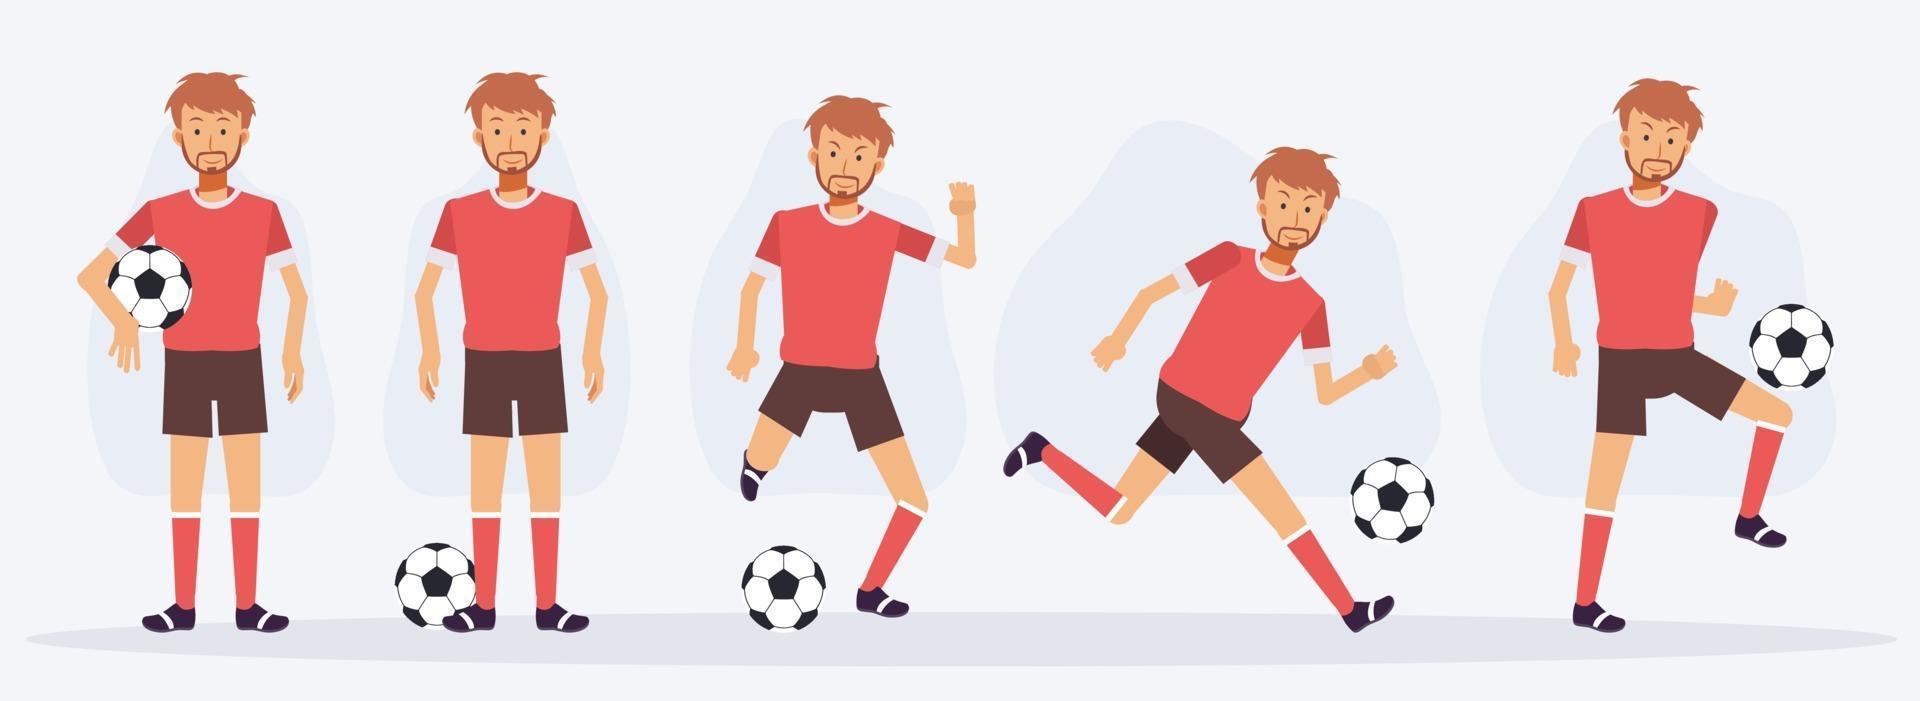 Satz von Fußball-, Fußballspieler-Charakteren, die verschiedene Aktionen zeigen. vektor